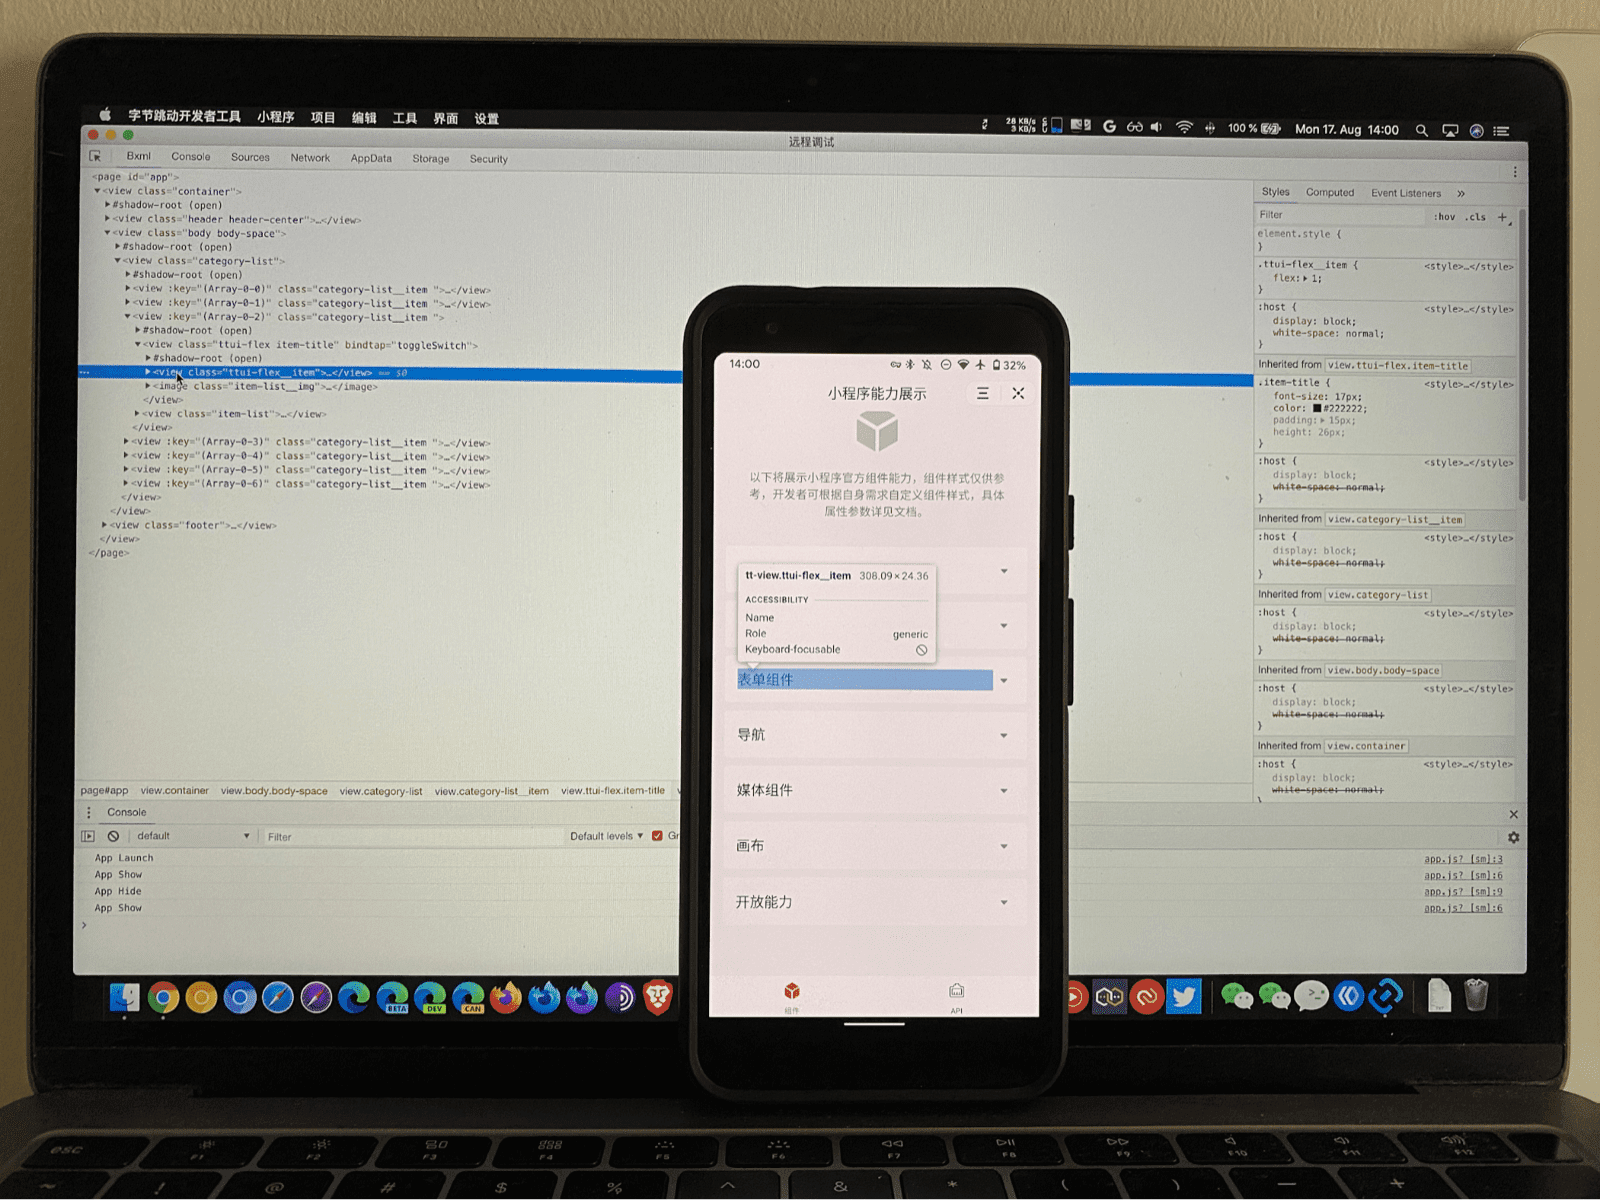 Мобильный телефон с мини-приложением, части пользовательского интерфейса которого выделены отладчиком ByteDance DevTools, работающим на ноутбуке и проверяющим его.